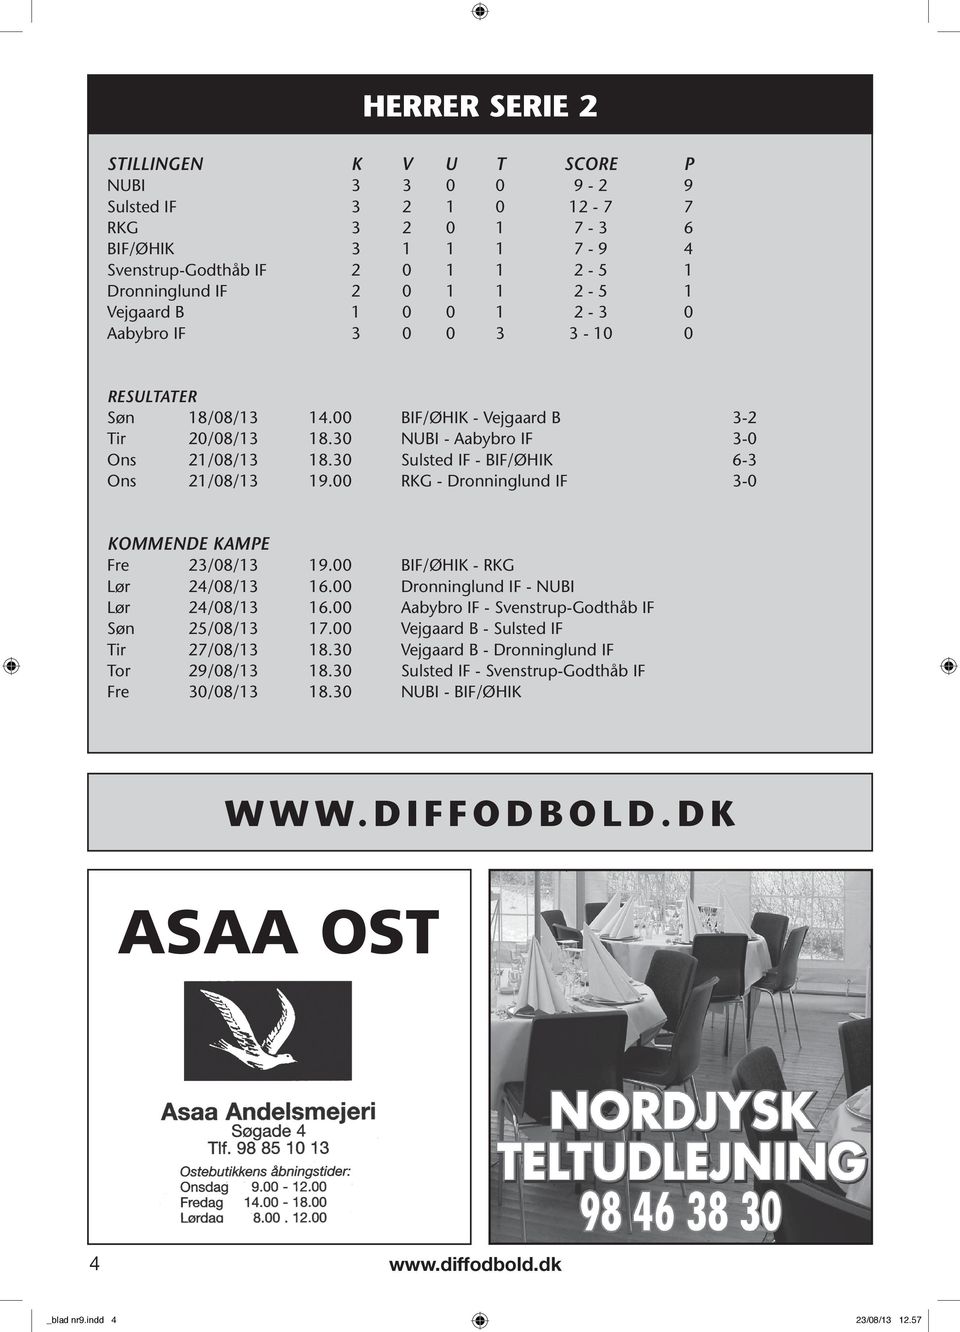 00 RKG - IF 3-0 KoMMenDe KAMPe Fre 23/08/13 19.00 BIF/ØHIK - RKG Lør 24/08/13 16.00 IF - NUBI Lør 24/08/13 16.00 Aabybro IF - Svenstrup-Godthåb IF Søn 25/08/13 17.